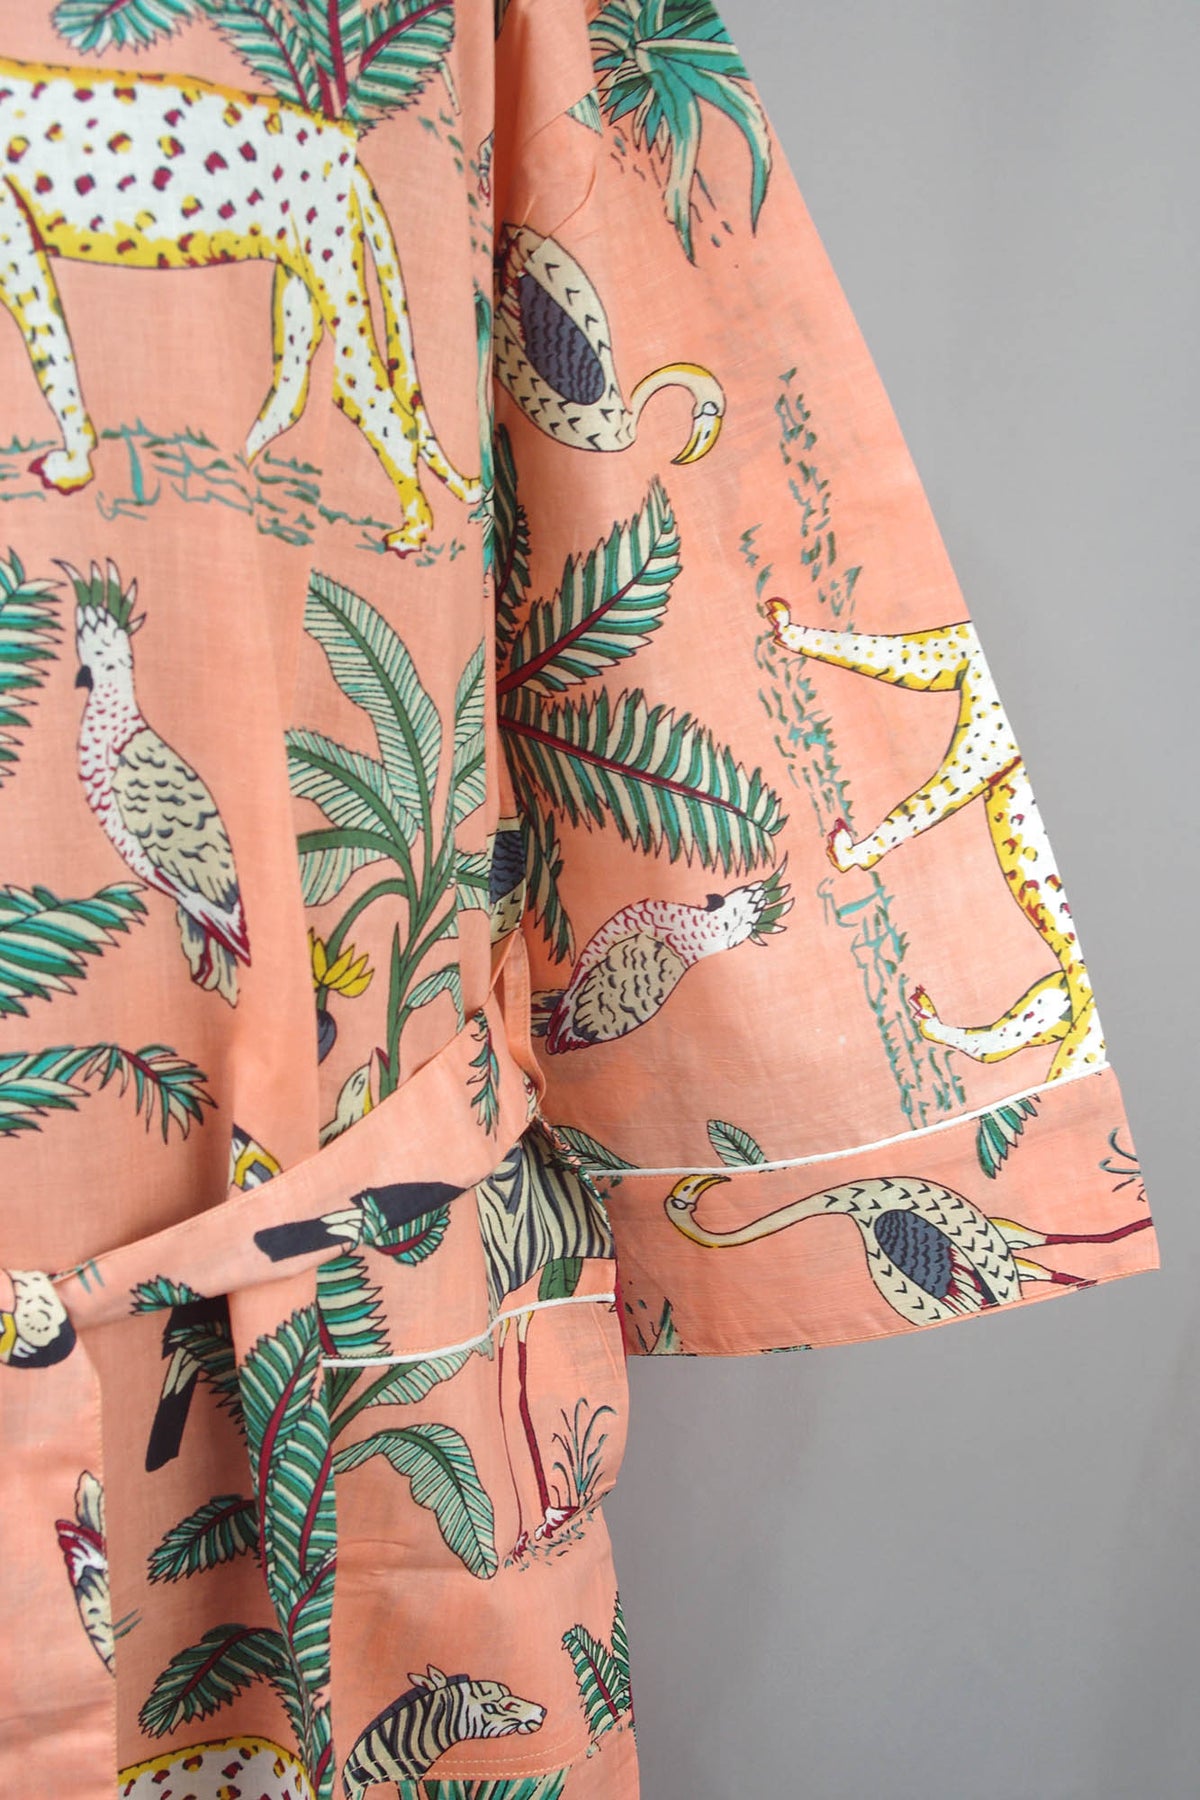 Animal Print On Peach Base Cotton Kimono Dressing Gown